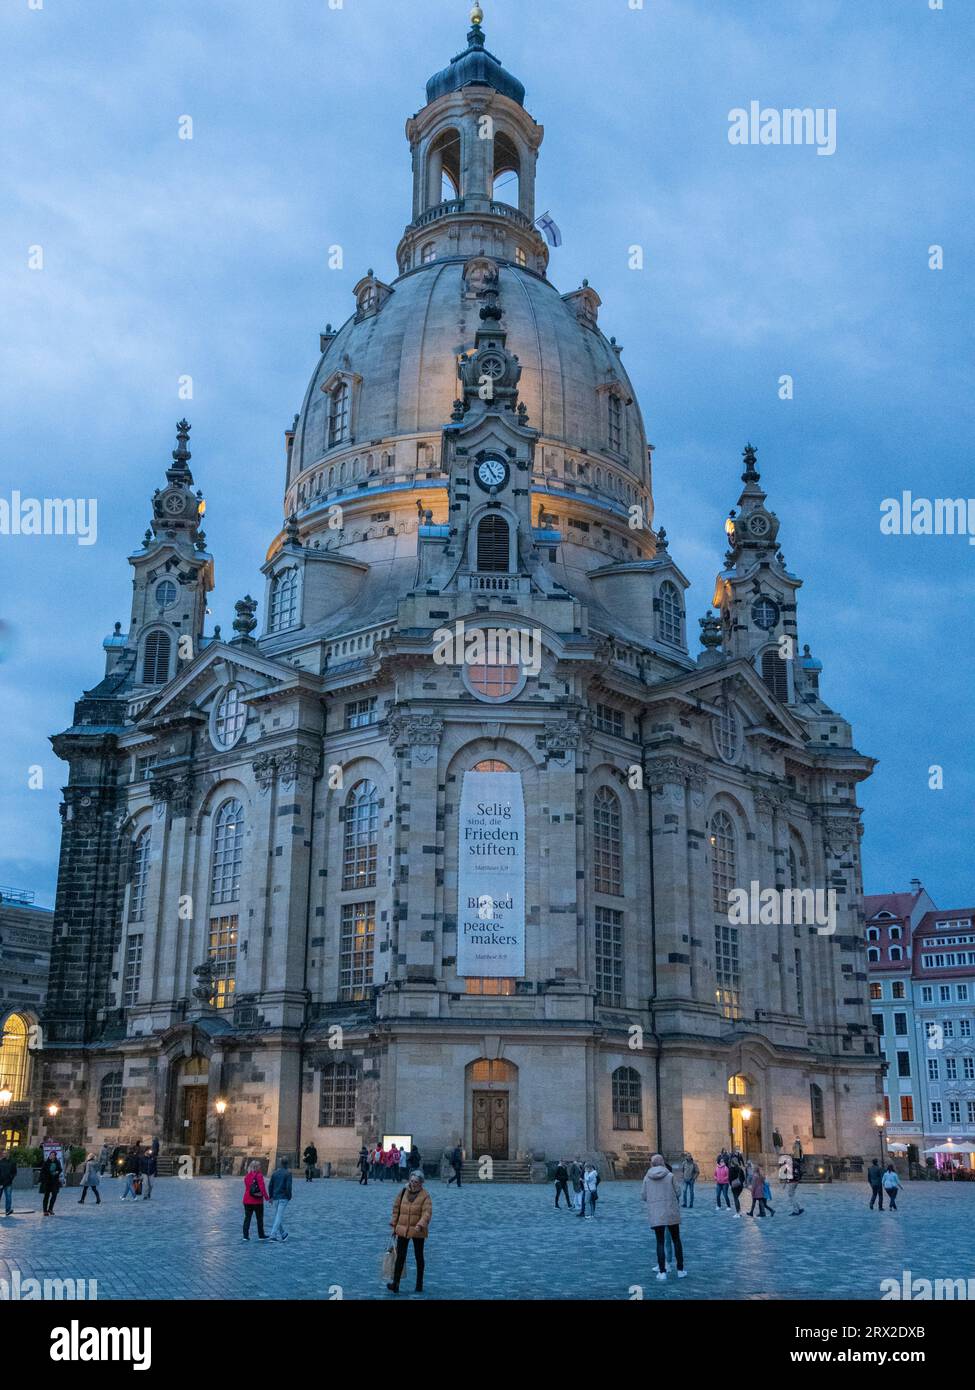 La Frauenkirche de Dresde (Iglesia de Nuestra Señora), una iglesia luterana reconstruida entre 1994 y 2005, Dresde, Sajonia, Alemania, Europa Foto de stock